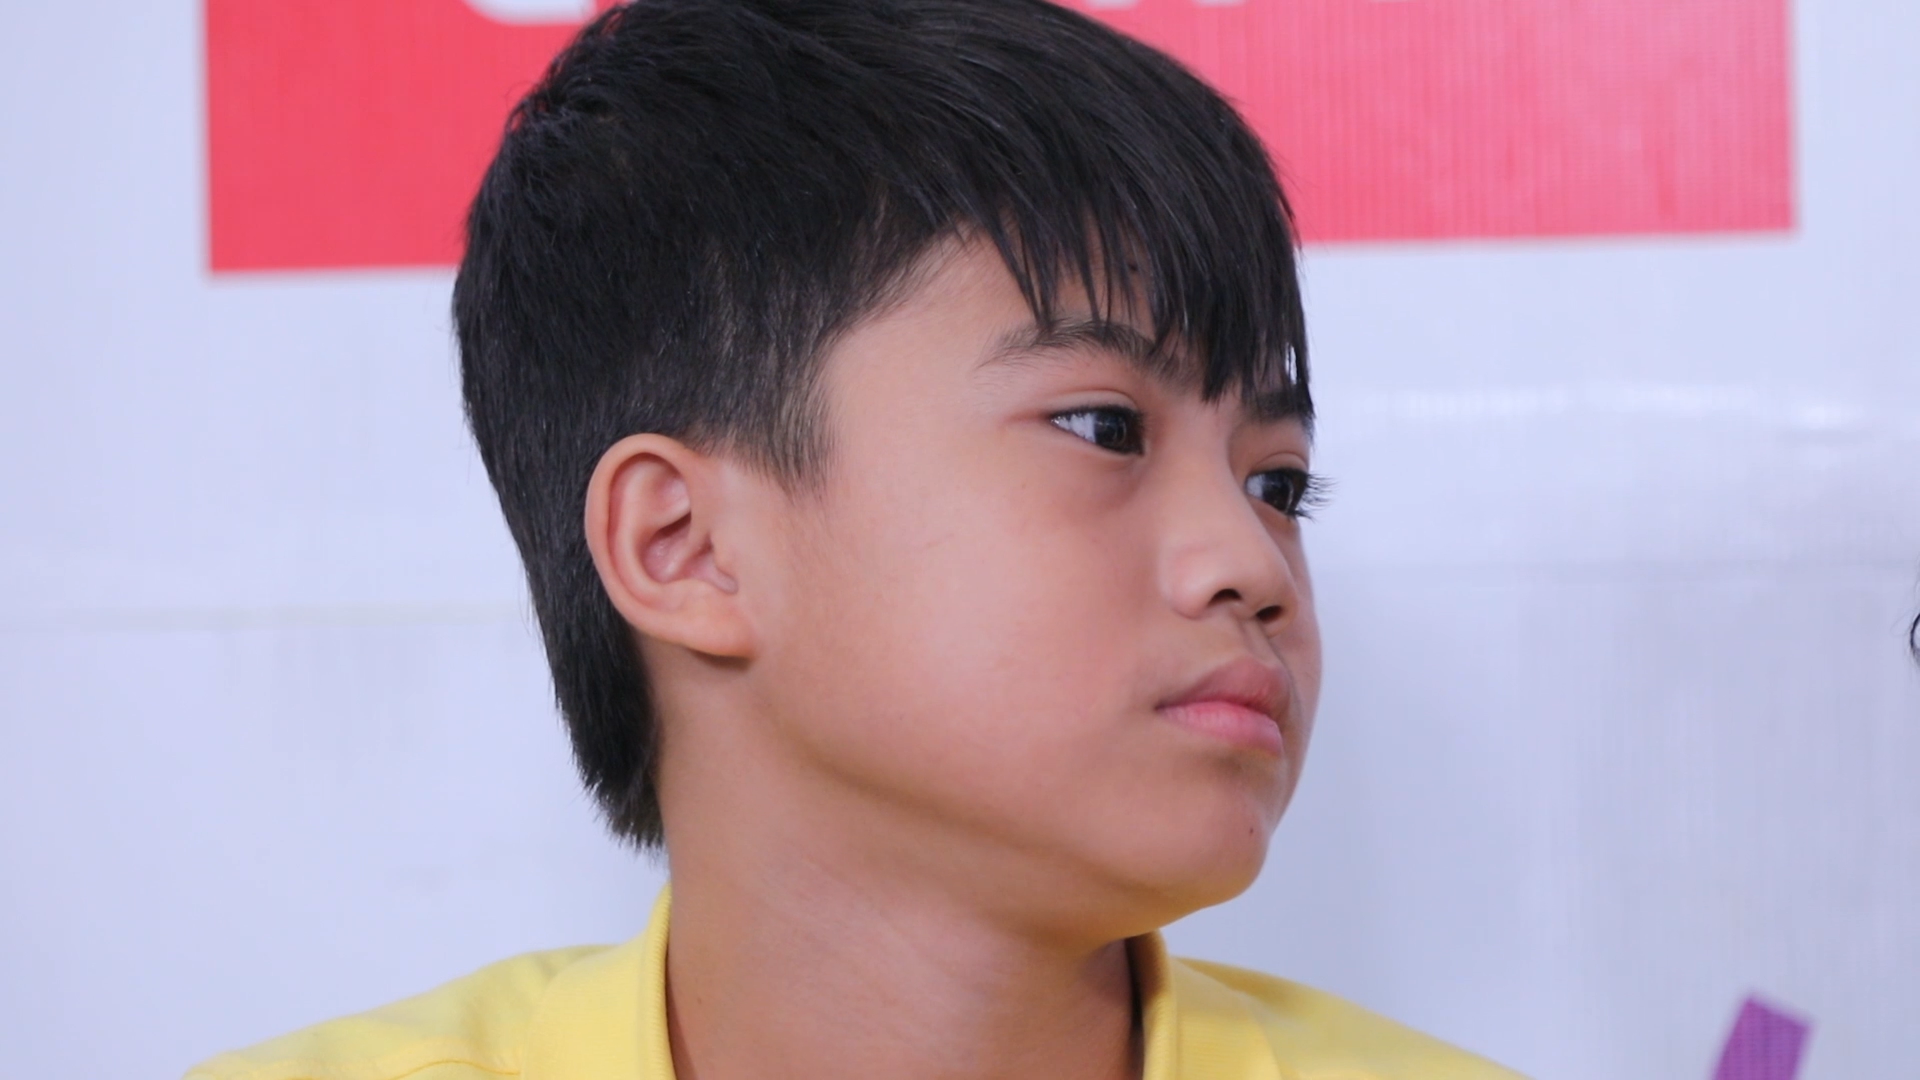 Model Kid Vietnam: Lần đầu tiên team Hương Ly chiến thắng, liên minh Lan - Thủy nhất loạt kiến nghị lên giám khảo - Ảnh 9.